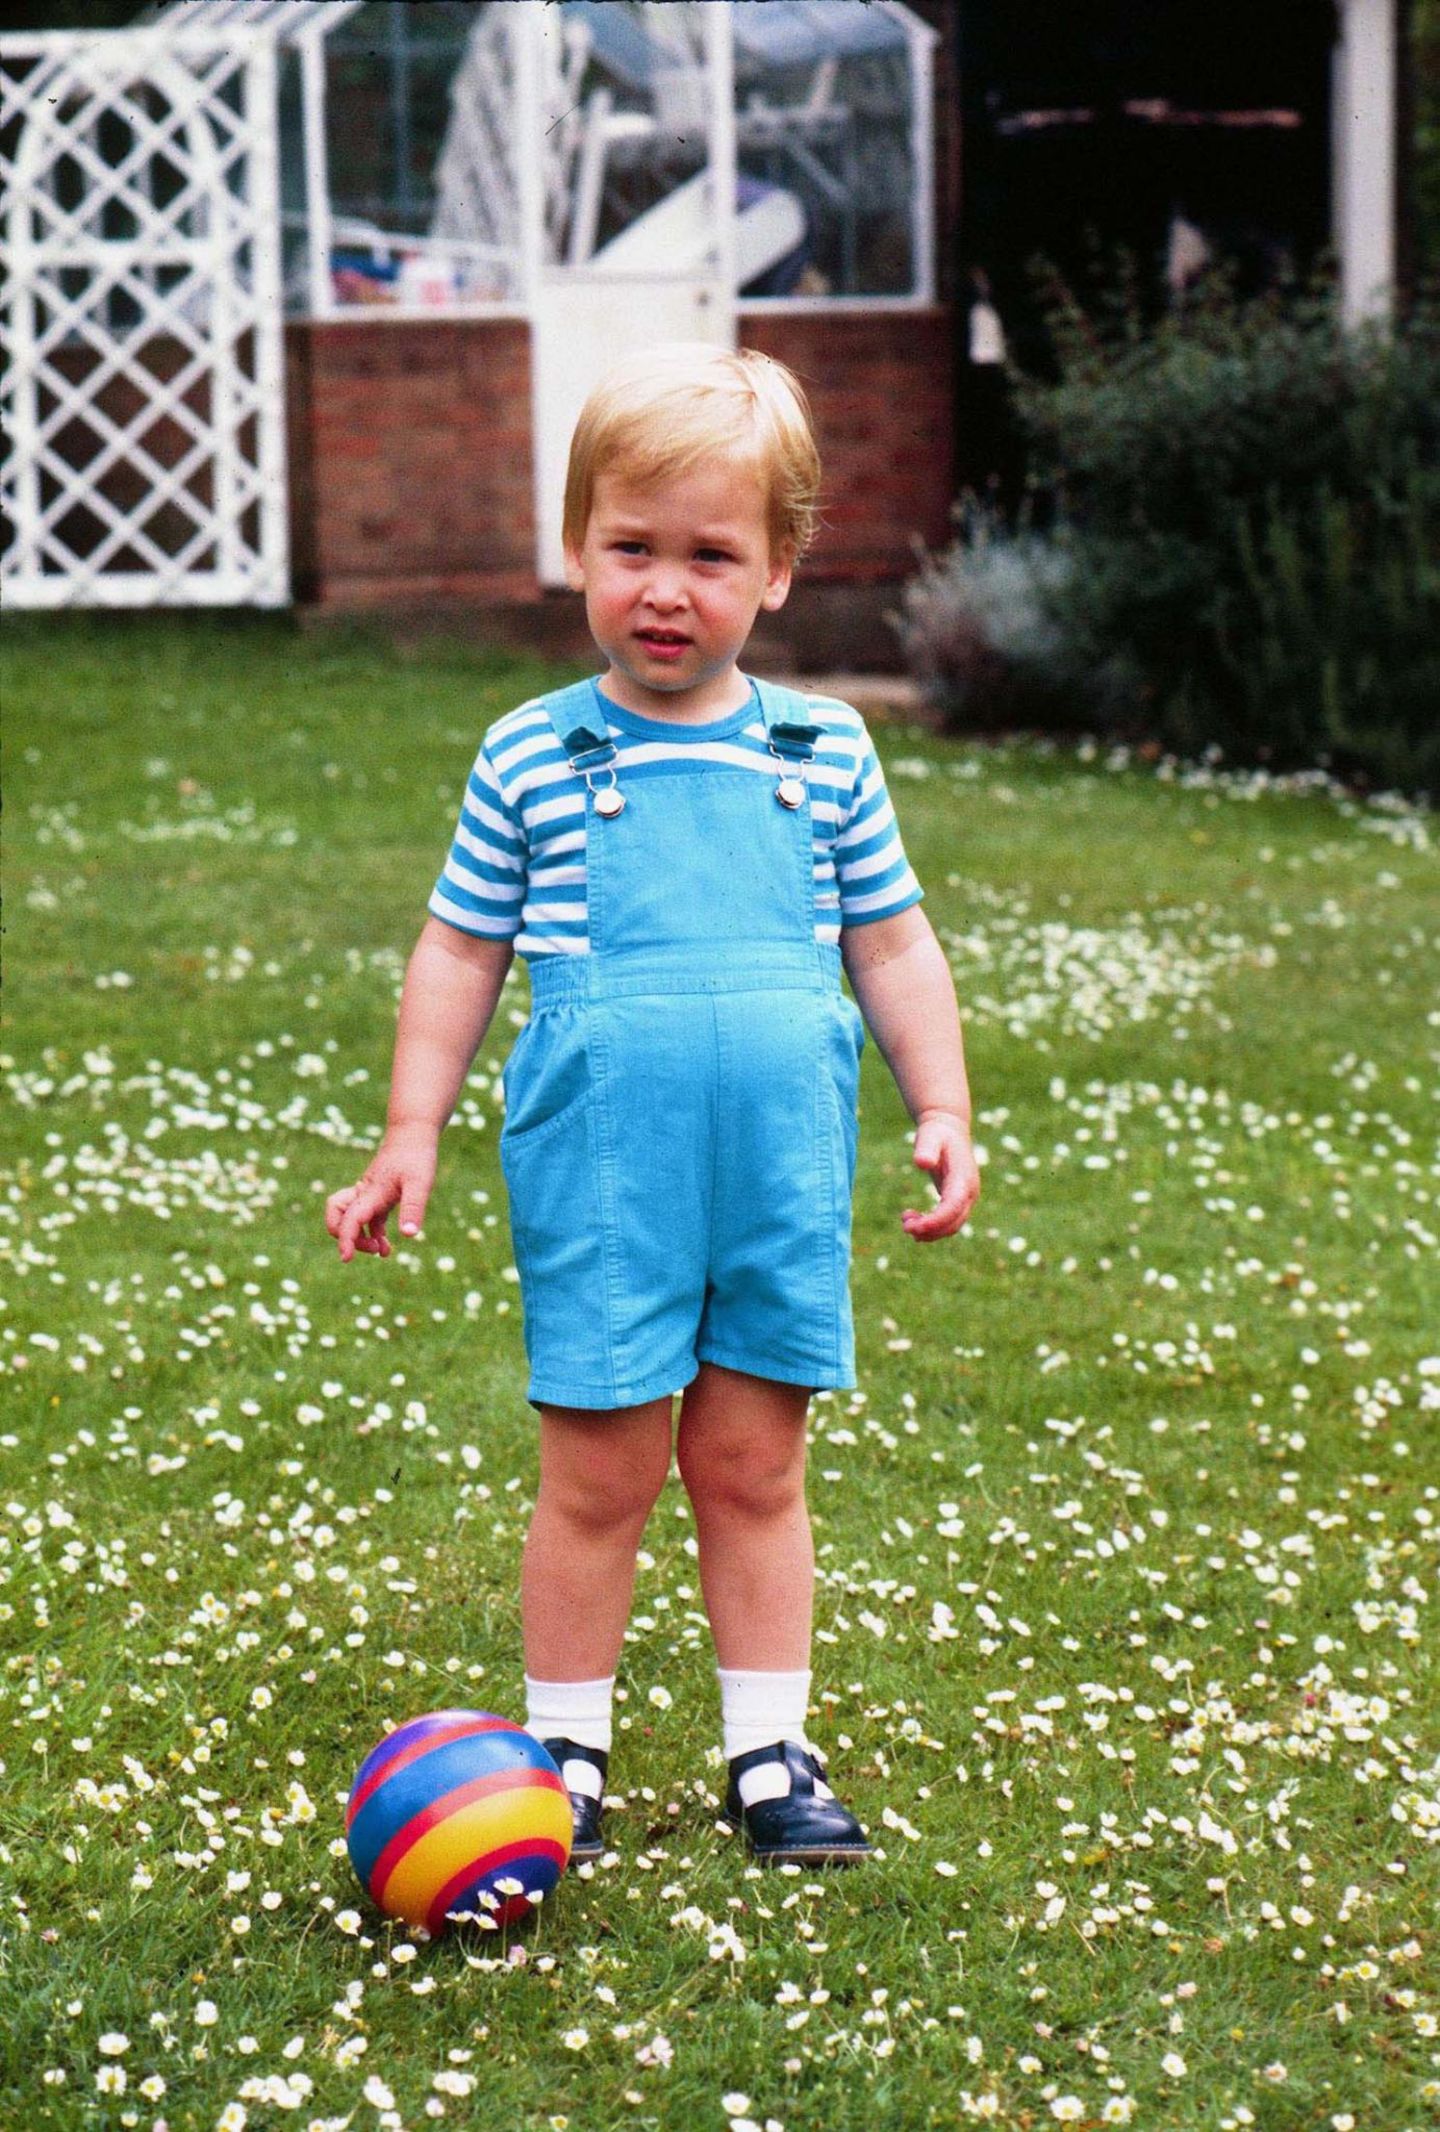 Prinz William feiert seinen zweiten Geburtstag 1984. Im Garten des Kensington Palace gibt es deswegen einen Fototermin, den der kleine Prinz offenbar nicht sonderlich spaßig findet.  Diese Miene kennt man doch?!